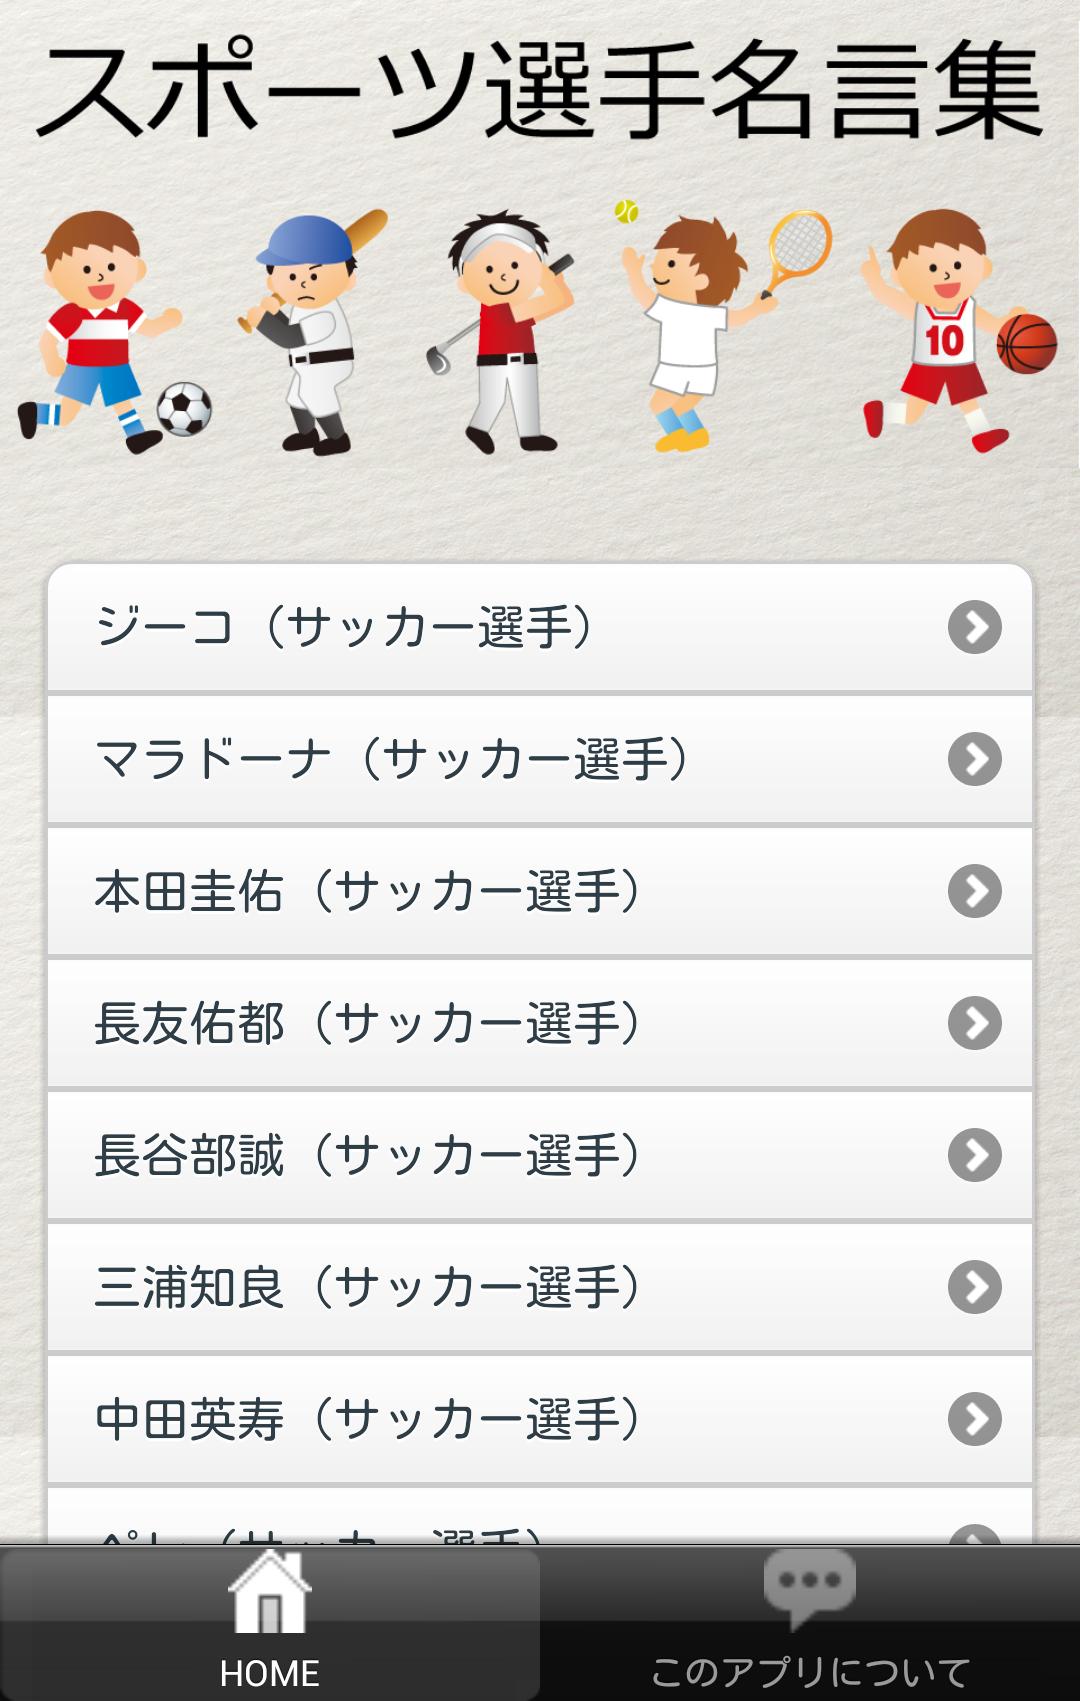 スポーツ選手名言集 For Android Apk Download